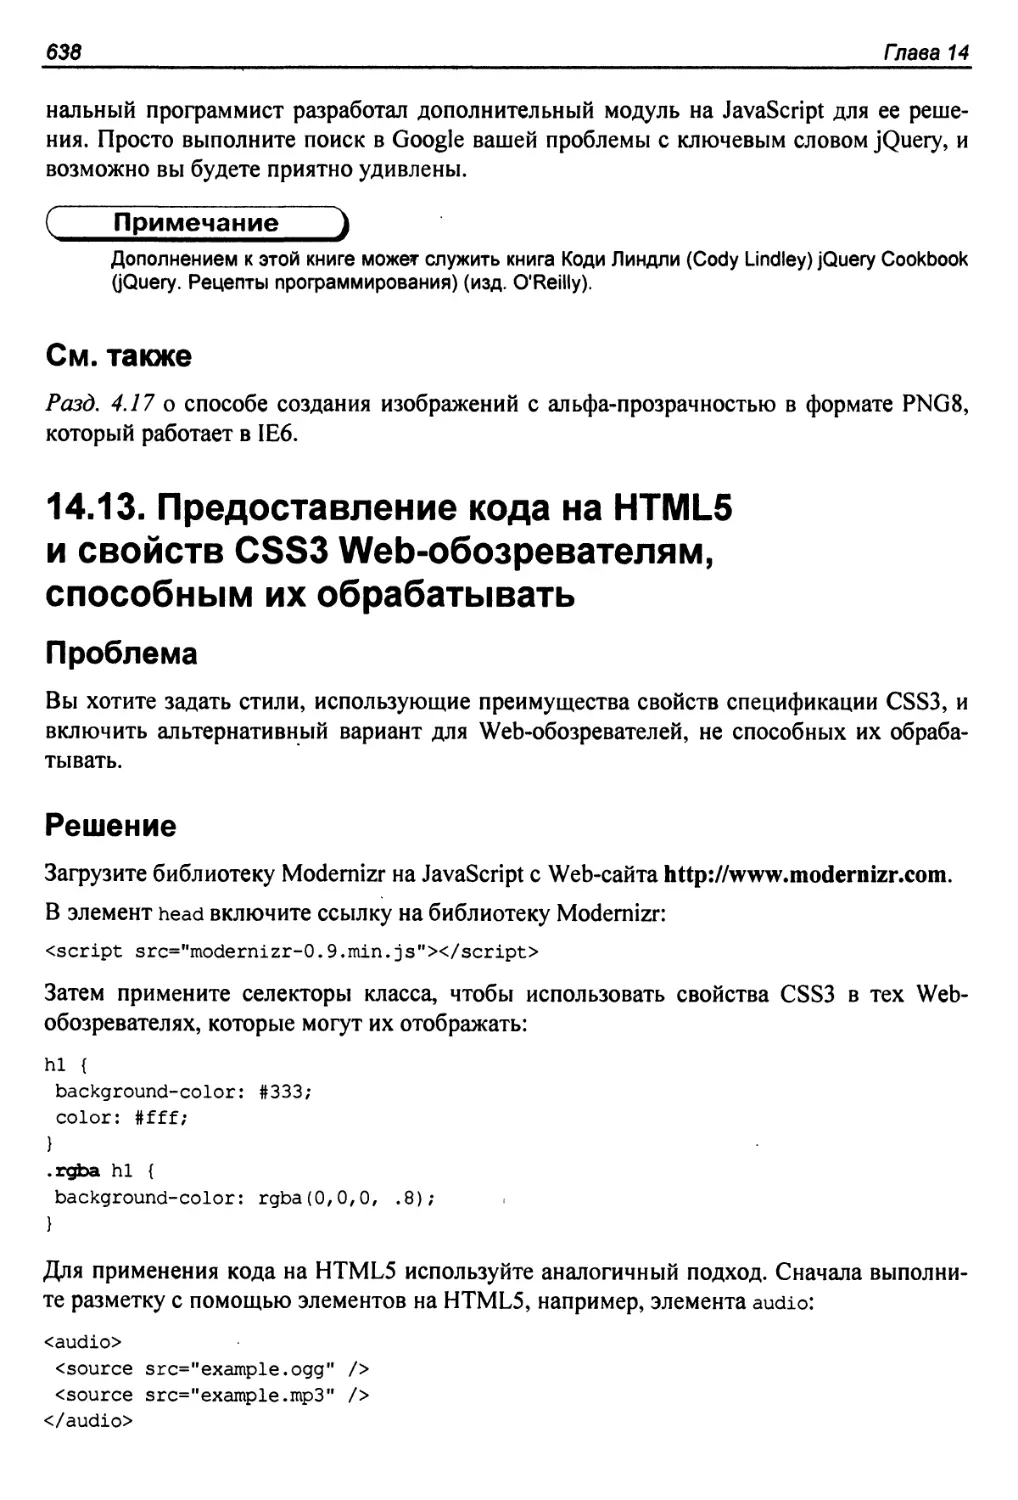 14.13. Предоставление кода на HTML5 и свойств CSS3 Web-обозревателям, способным их обрабатывать